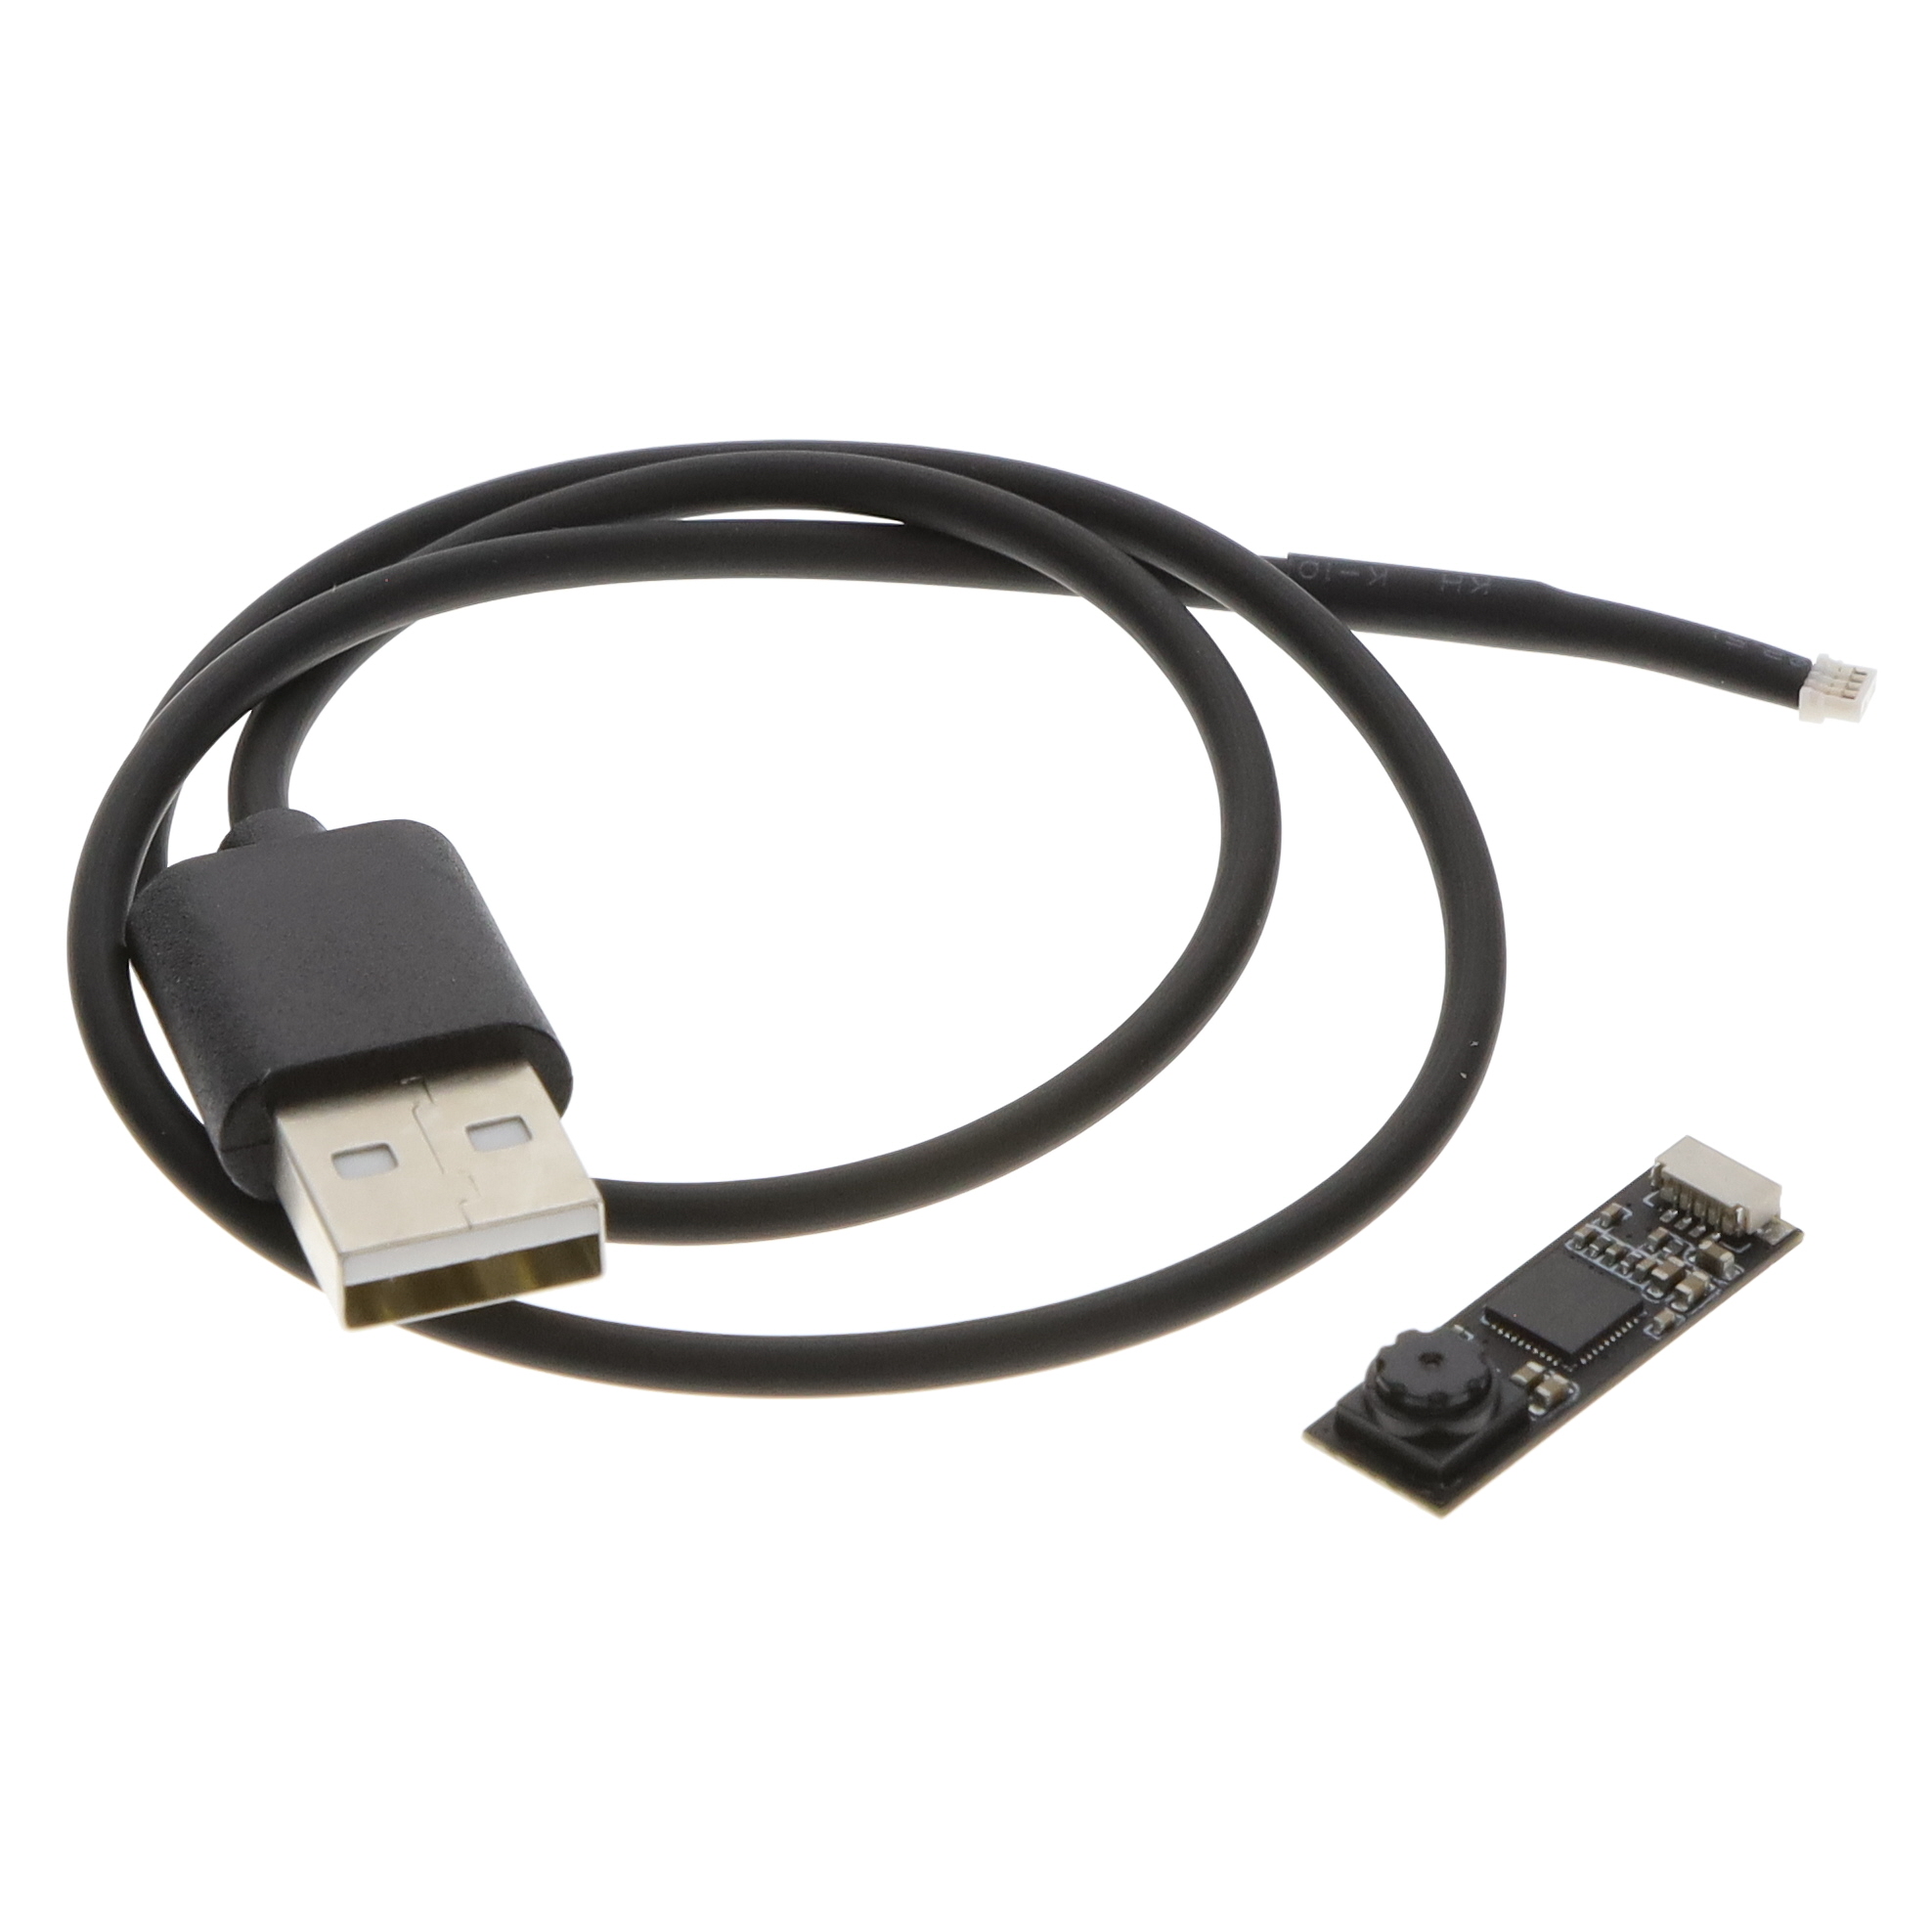 【5733】ULTRA TINY USB CAMERA WITH GC030